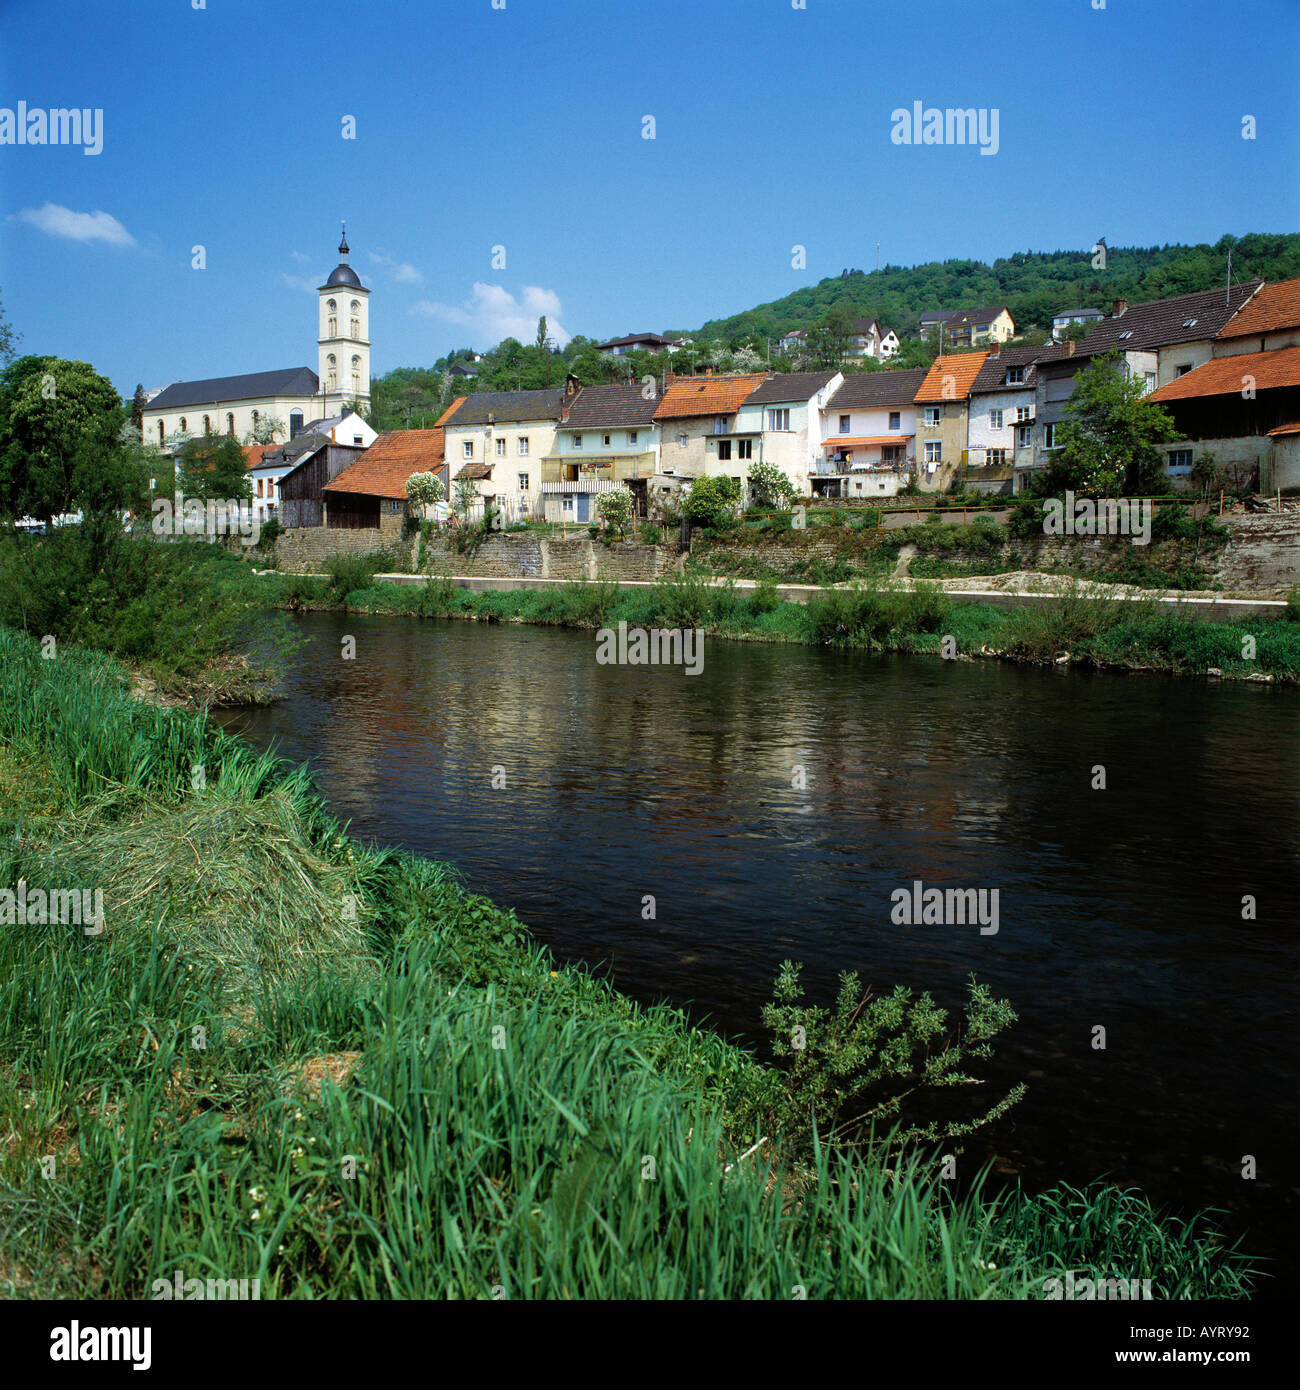 Flusslandschaft, Stadtansicht mit Sauerpromenade, Bollendorf, Sauer, Naturpark Suedeifel (Deutsch-Luxemburgischer), Rheinland-Pfalz Stock Photo